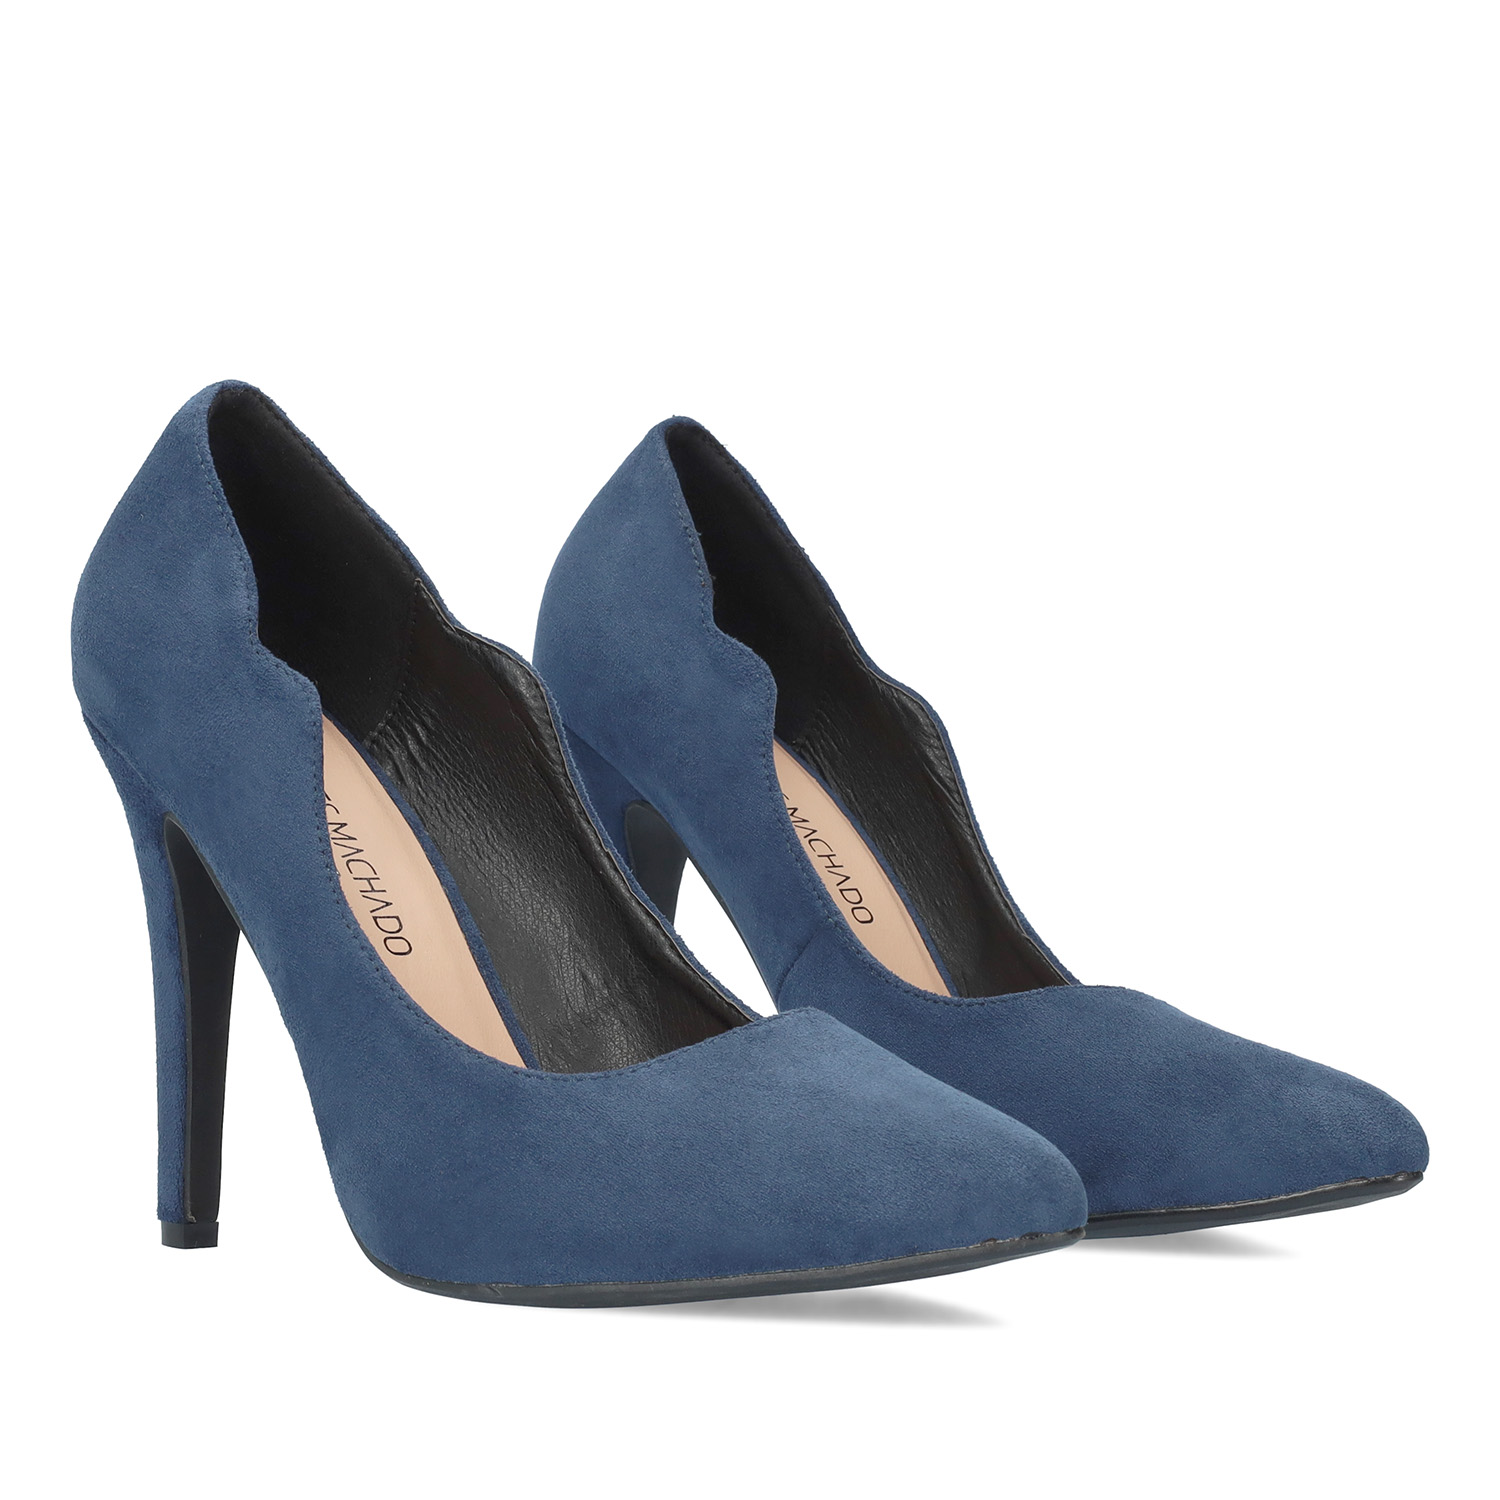 Fine tip stilettos in dark blue faux suede. 